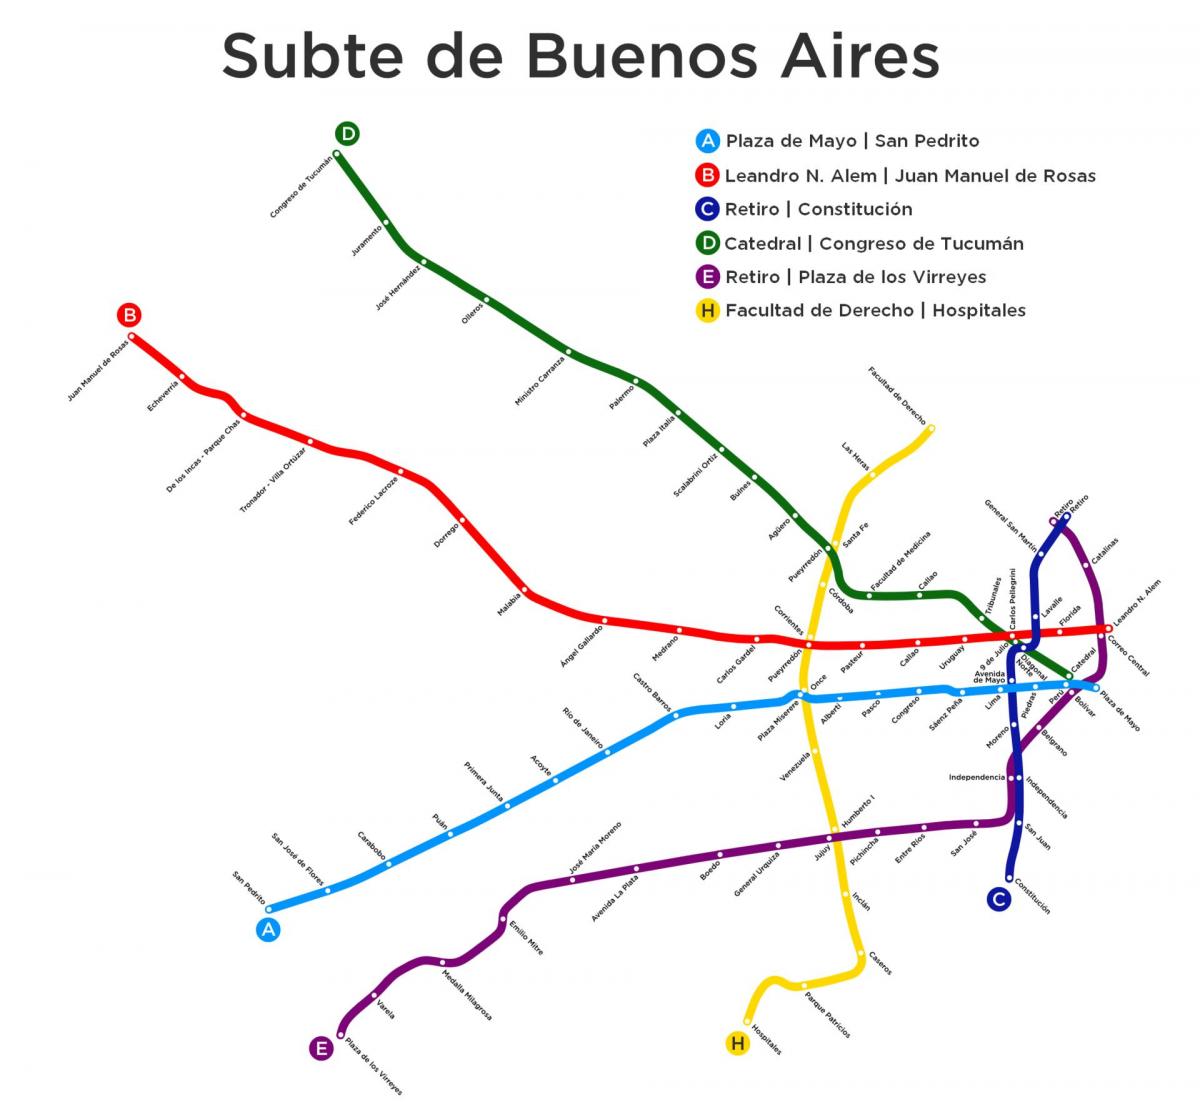 Mapa da estação de metrô de Buenos Aires